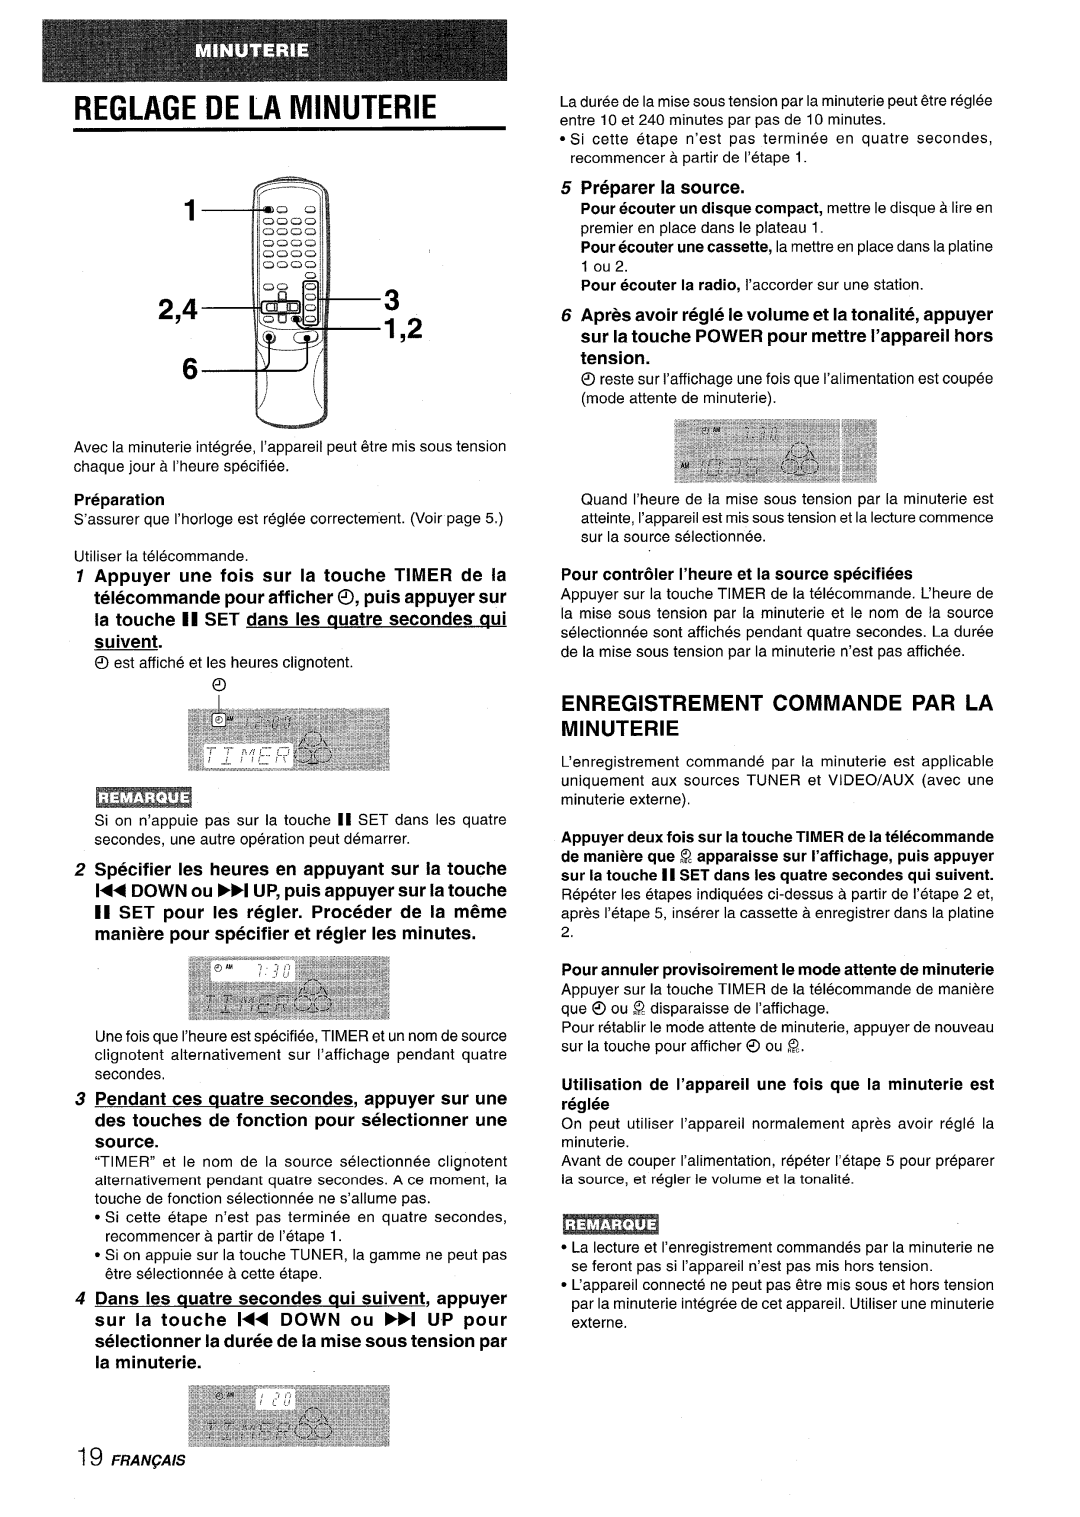 Aiwa CX-NV8000 manual Reglage De La Minuterie, Enregistrement Commande Par La Minuterie, Preparer la source 